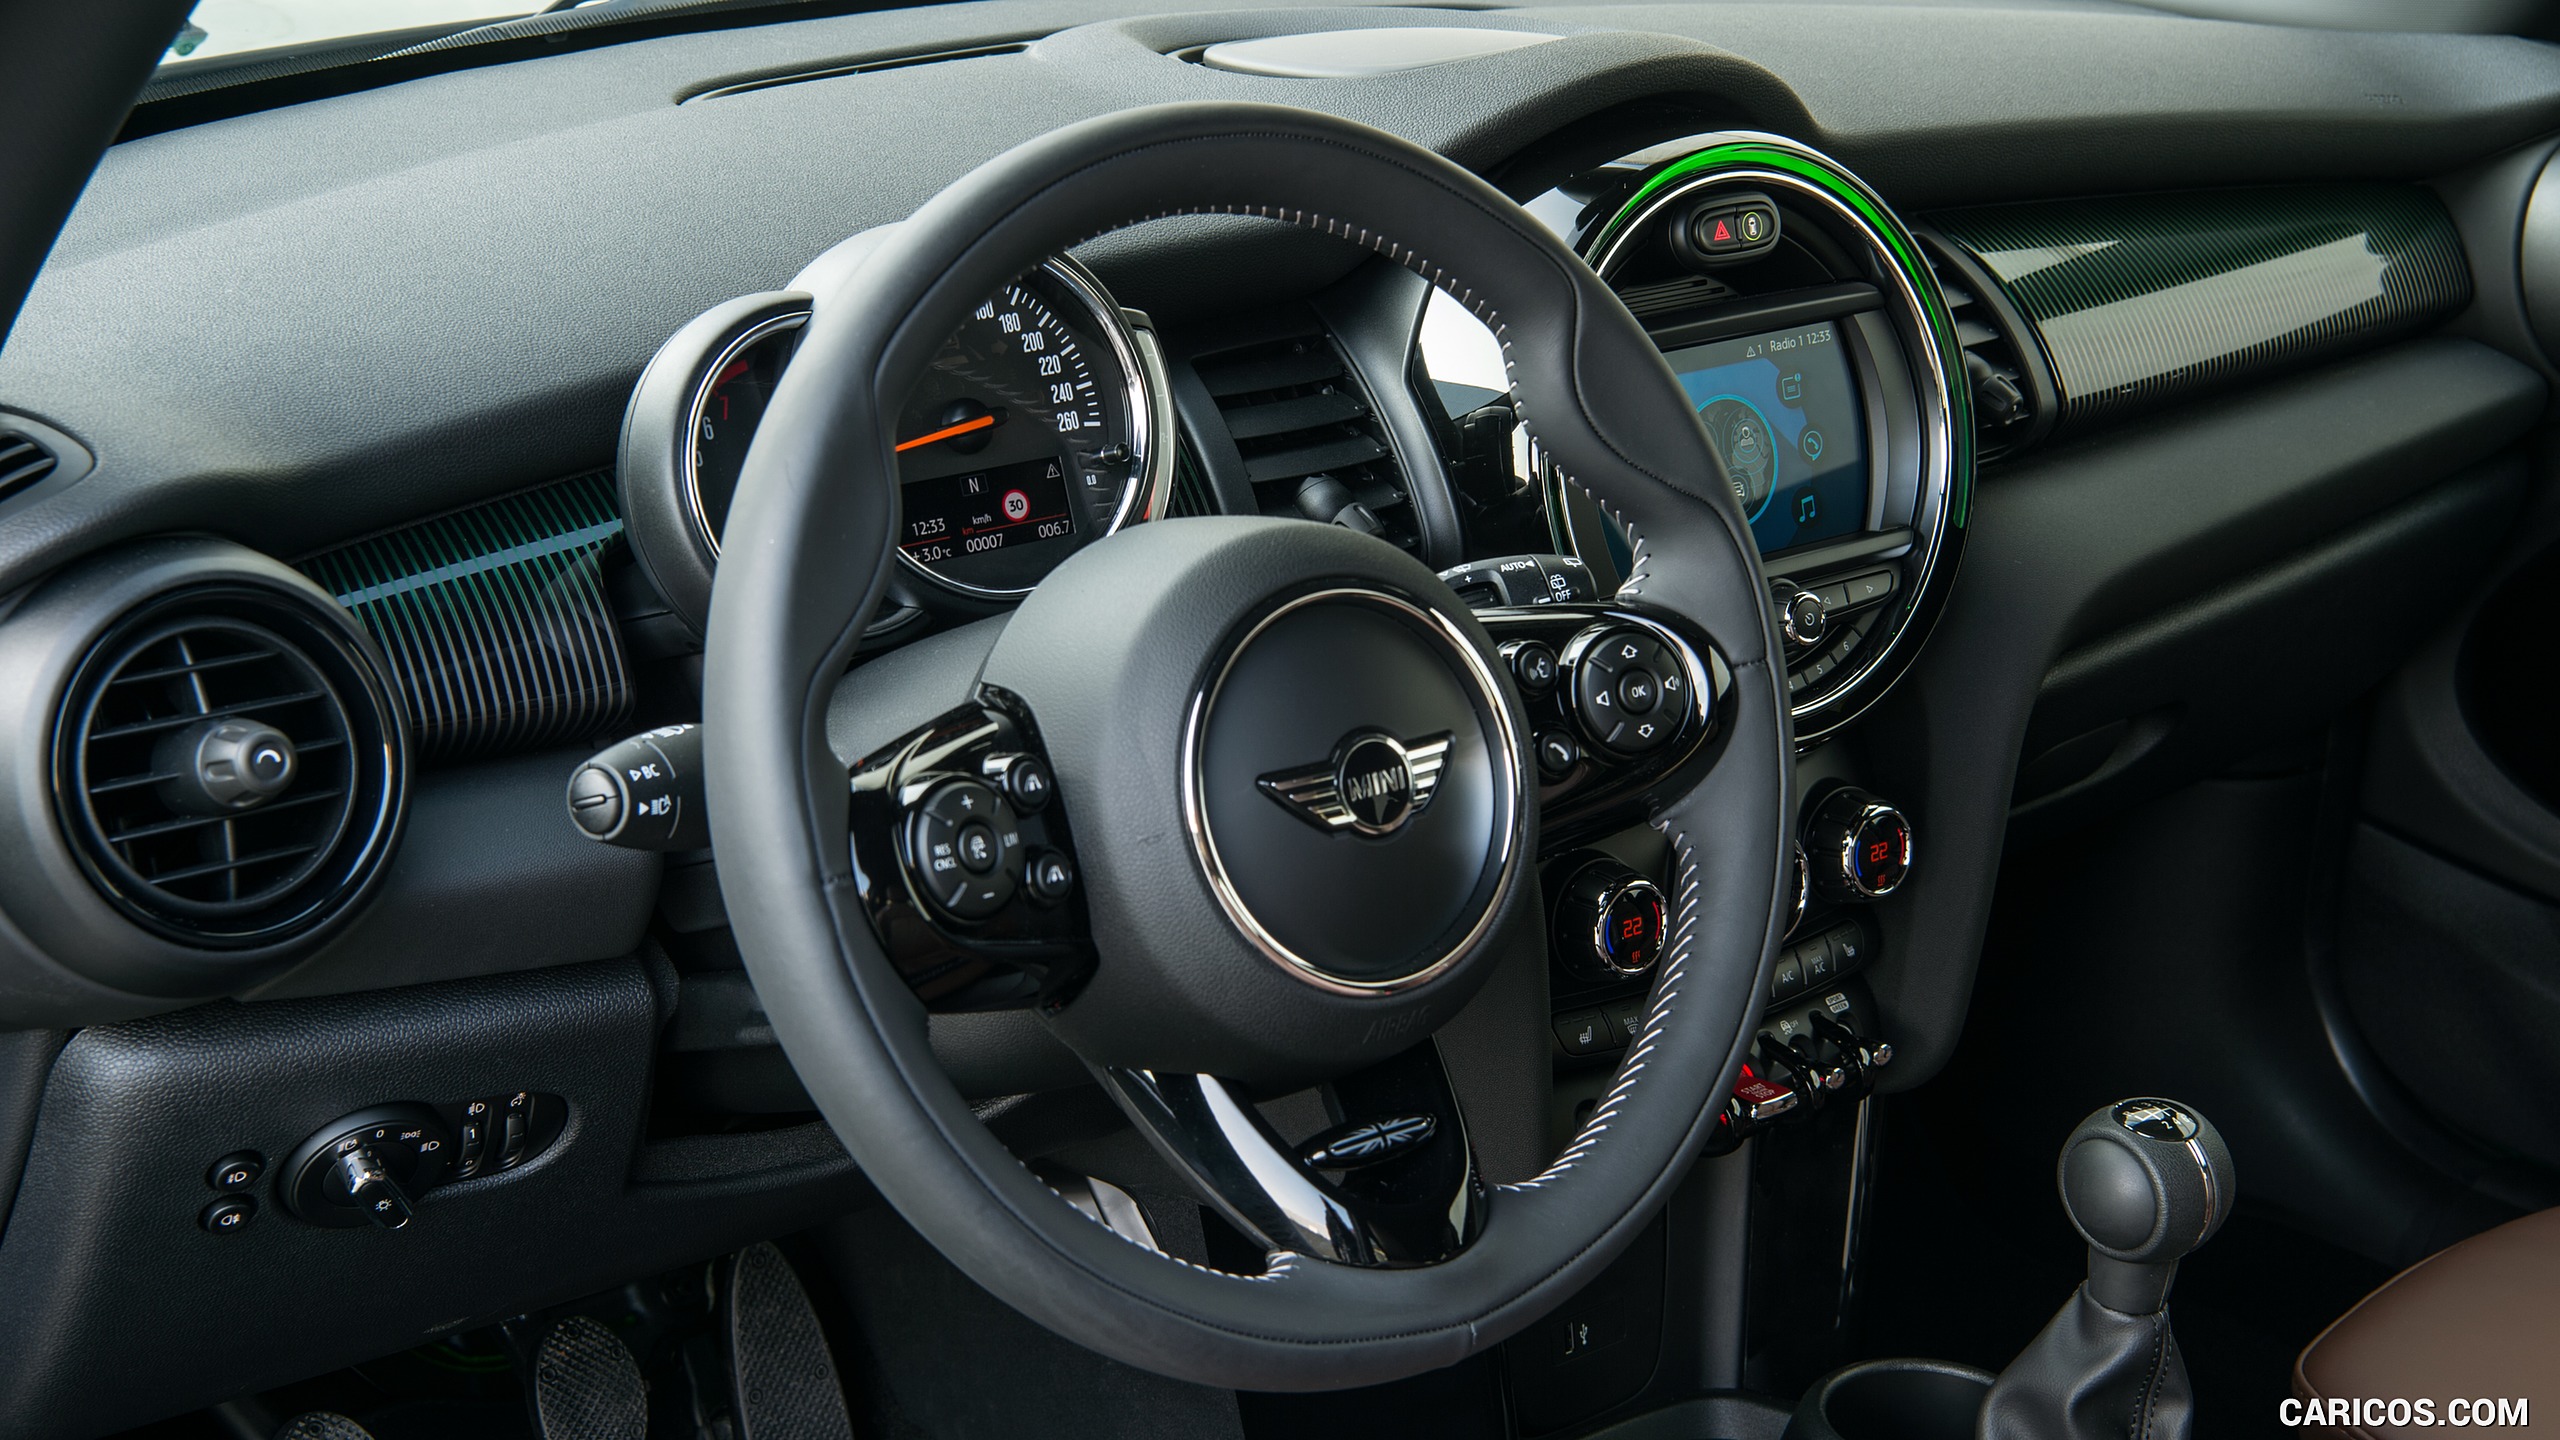 2019 MINI Cooper 3-Door 60 Years Edition - Interior, Steering Wheel, #88 of 102